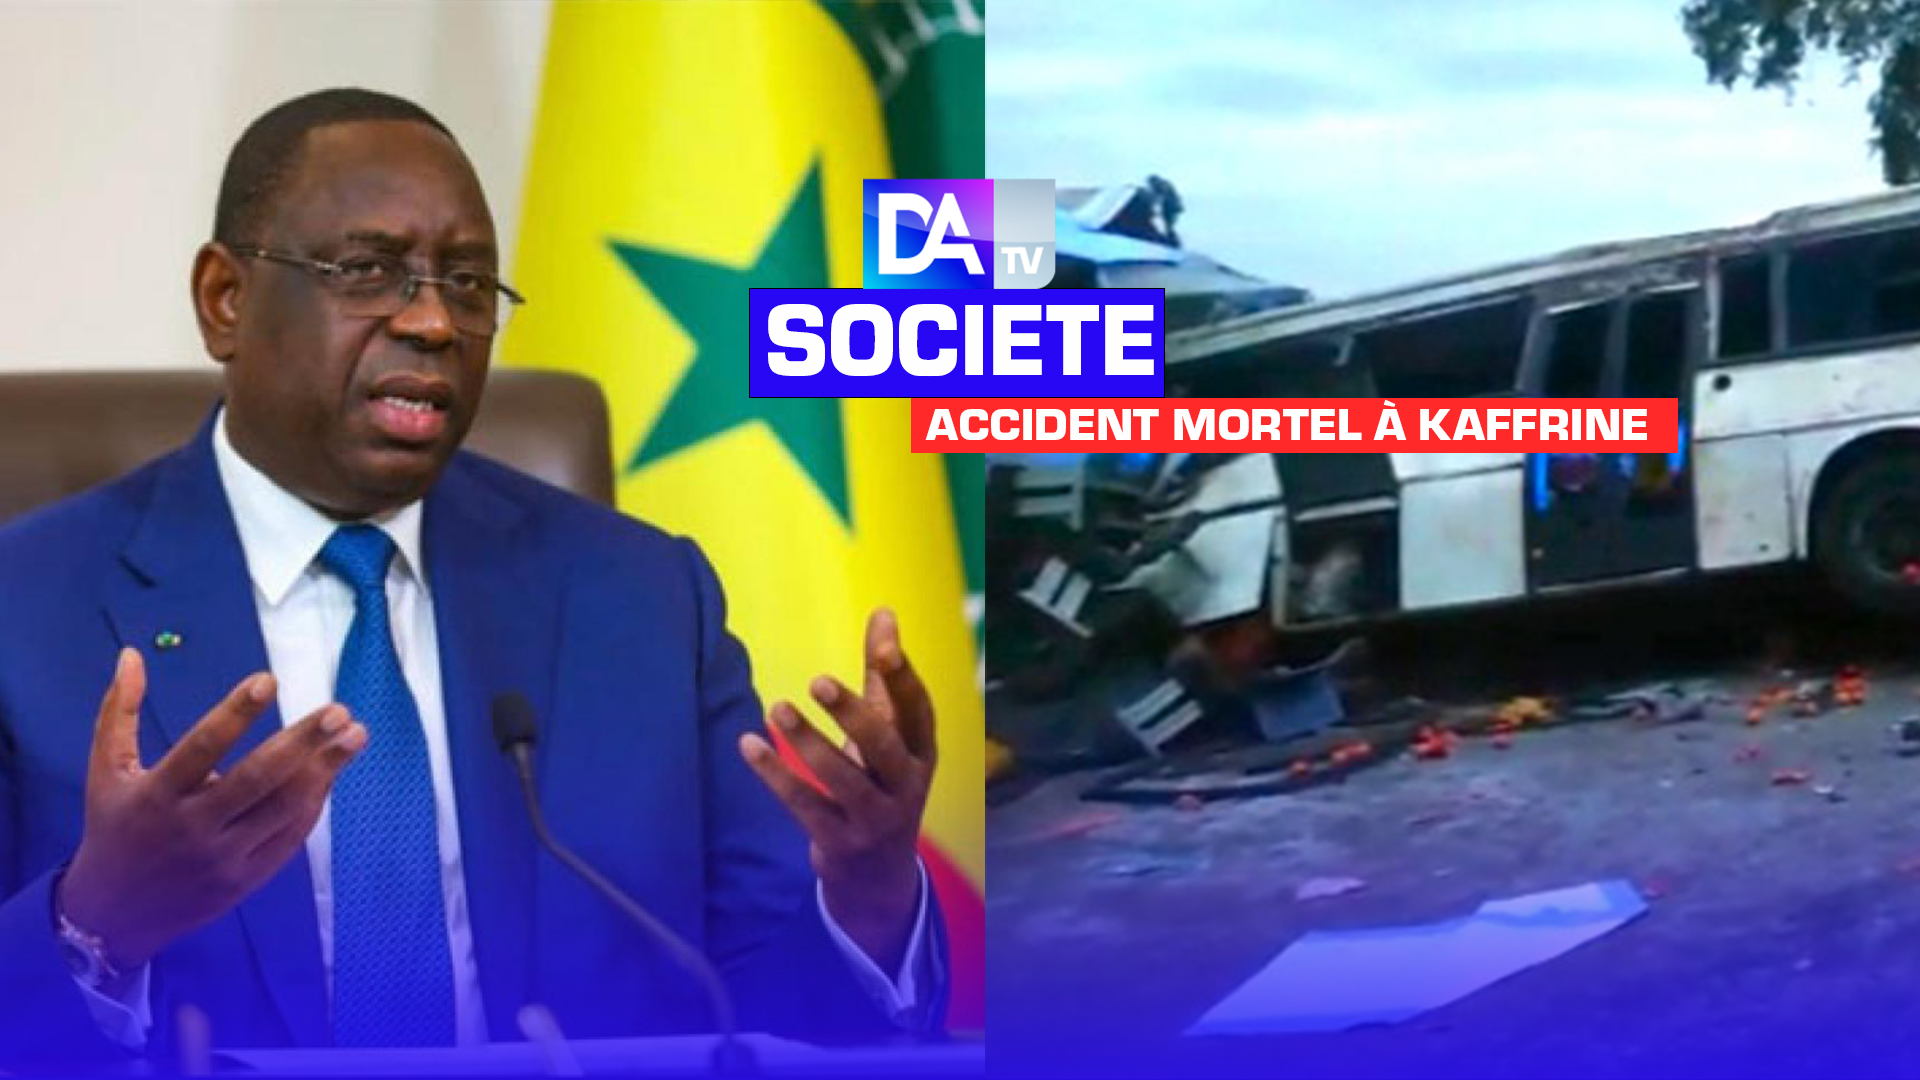 Accident mortel sur l’axe Kaffrine-Tamba: Le président Macky Sall annonce 3 jours de deuil national et un conseil interministériel ce lundi